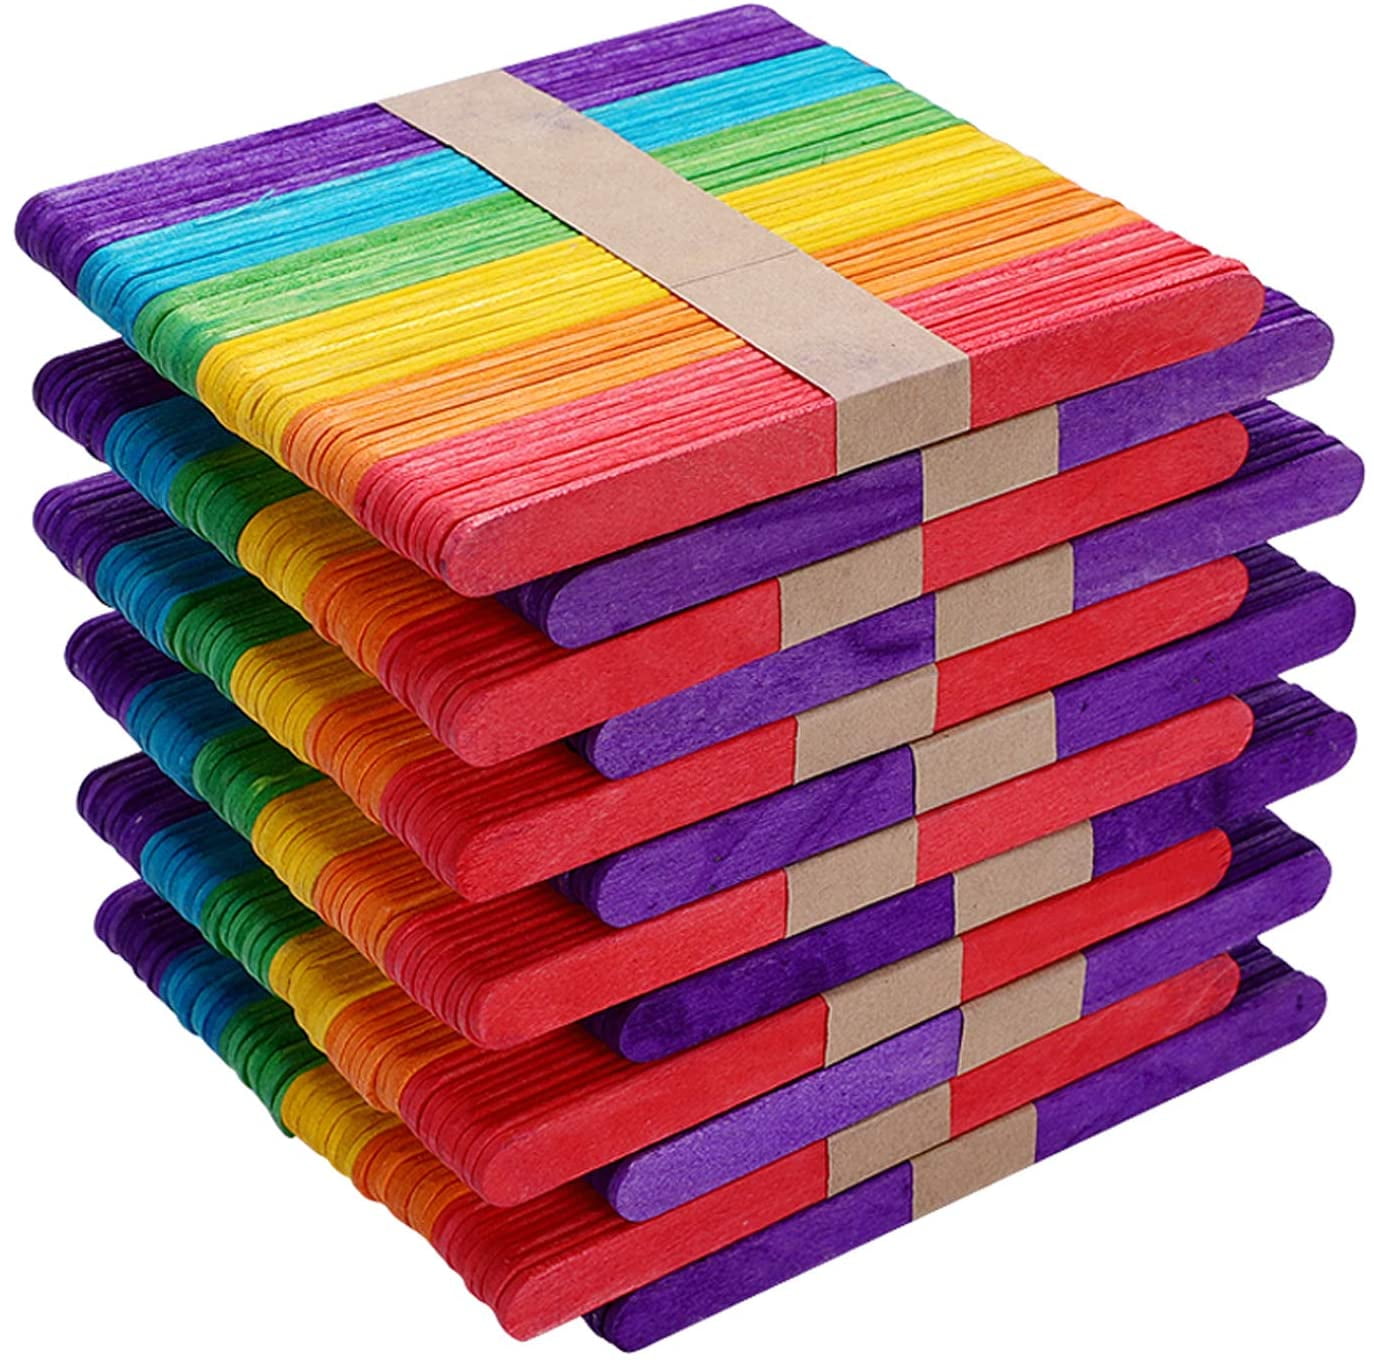 Farbige Holz-Eisstiele zum Basteln & Bauen, L 11,4 cm, B 10 mm, Sortierte  Farben, 30 Stk/ 1 Pck [HOB-579990] - Packlinq